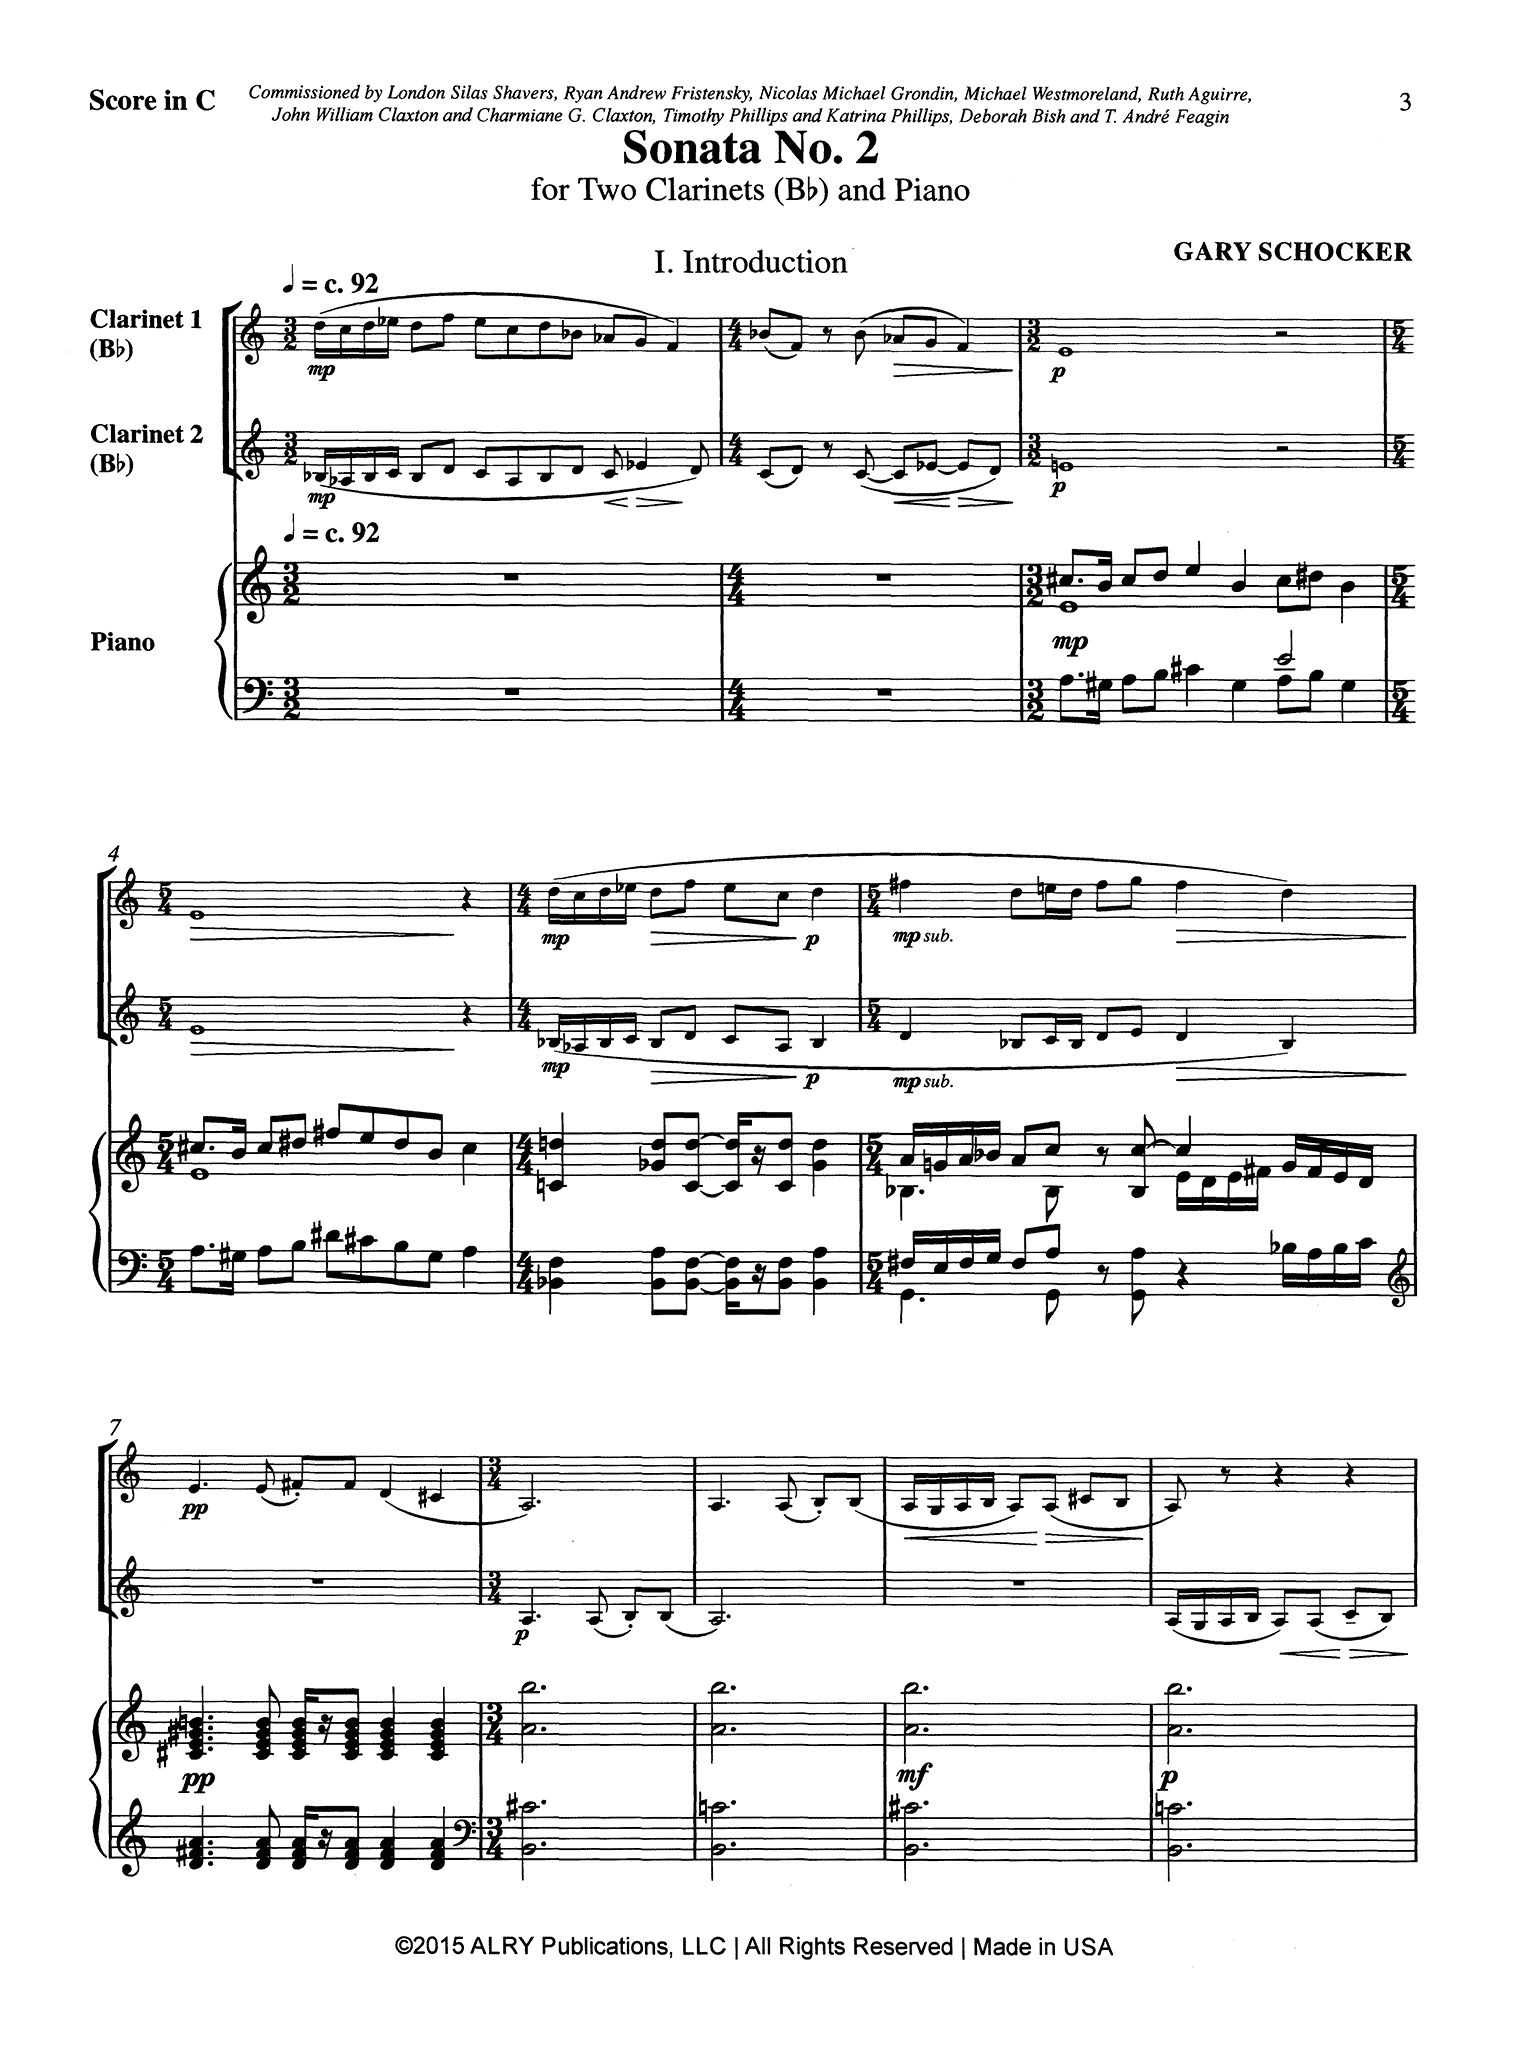 Schocker Sonata No. 2 for Two Clarinets & Piano - Movement 1